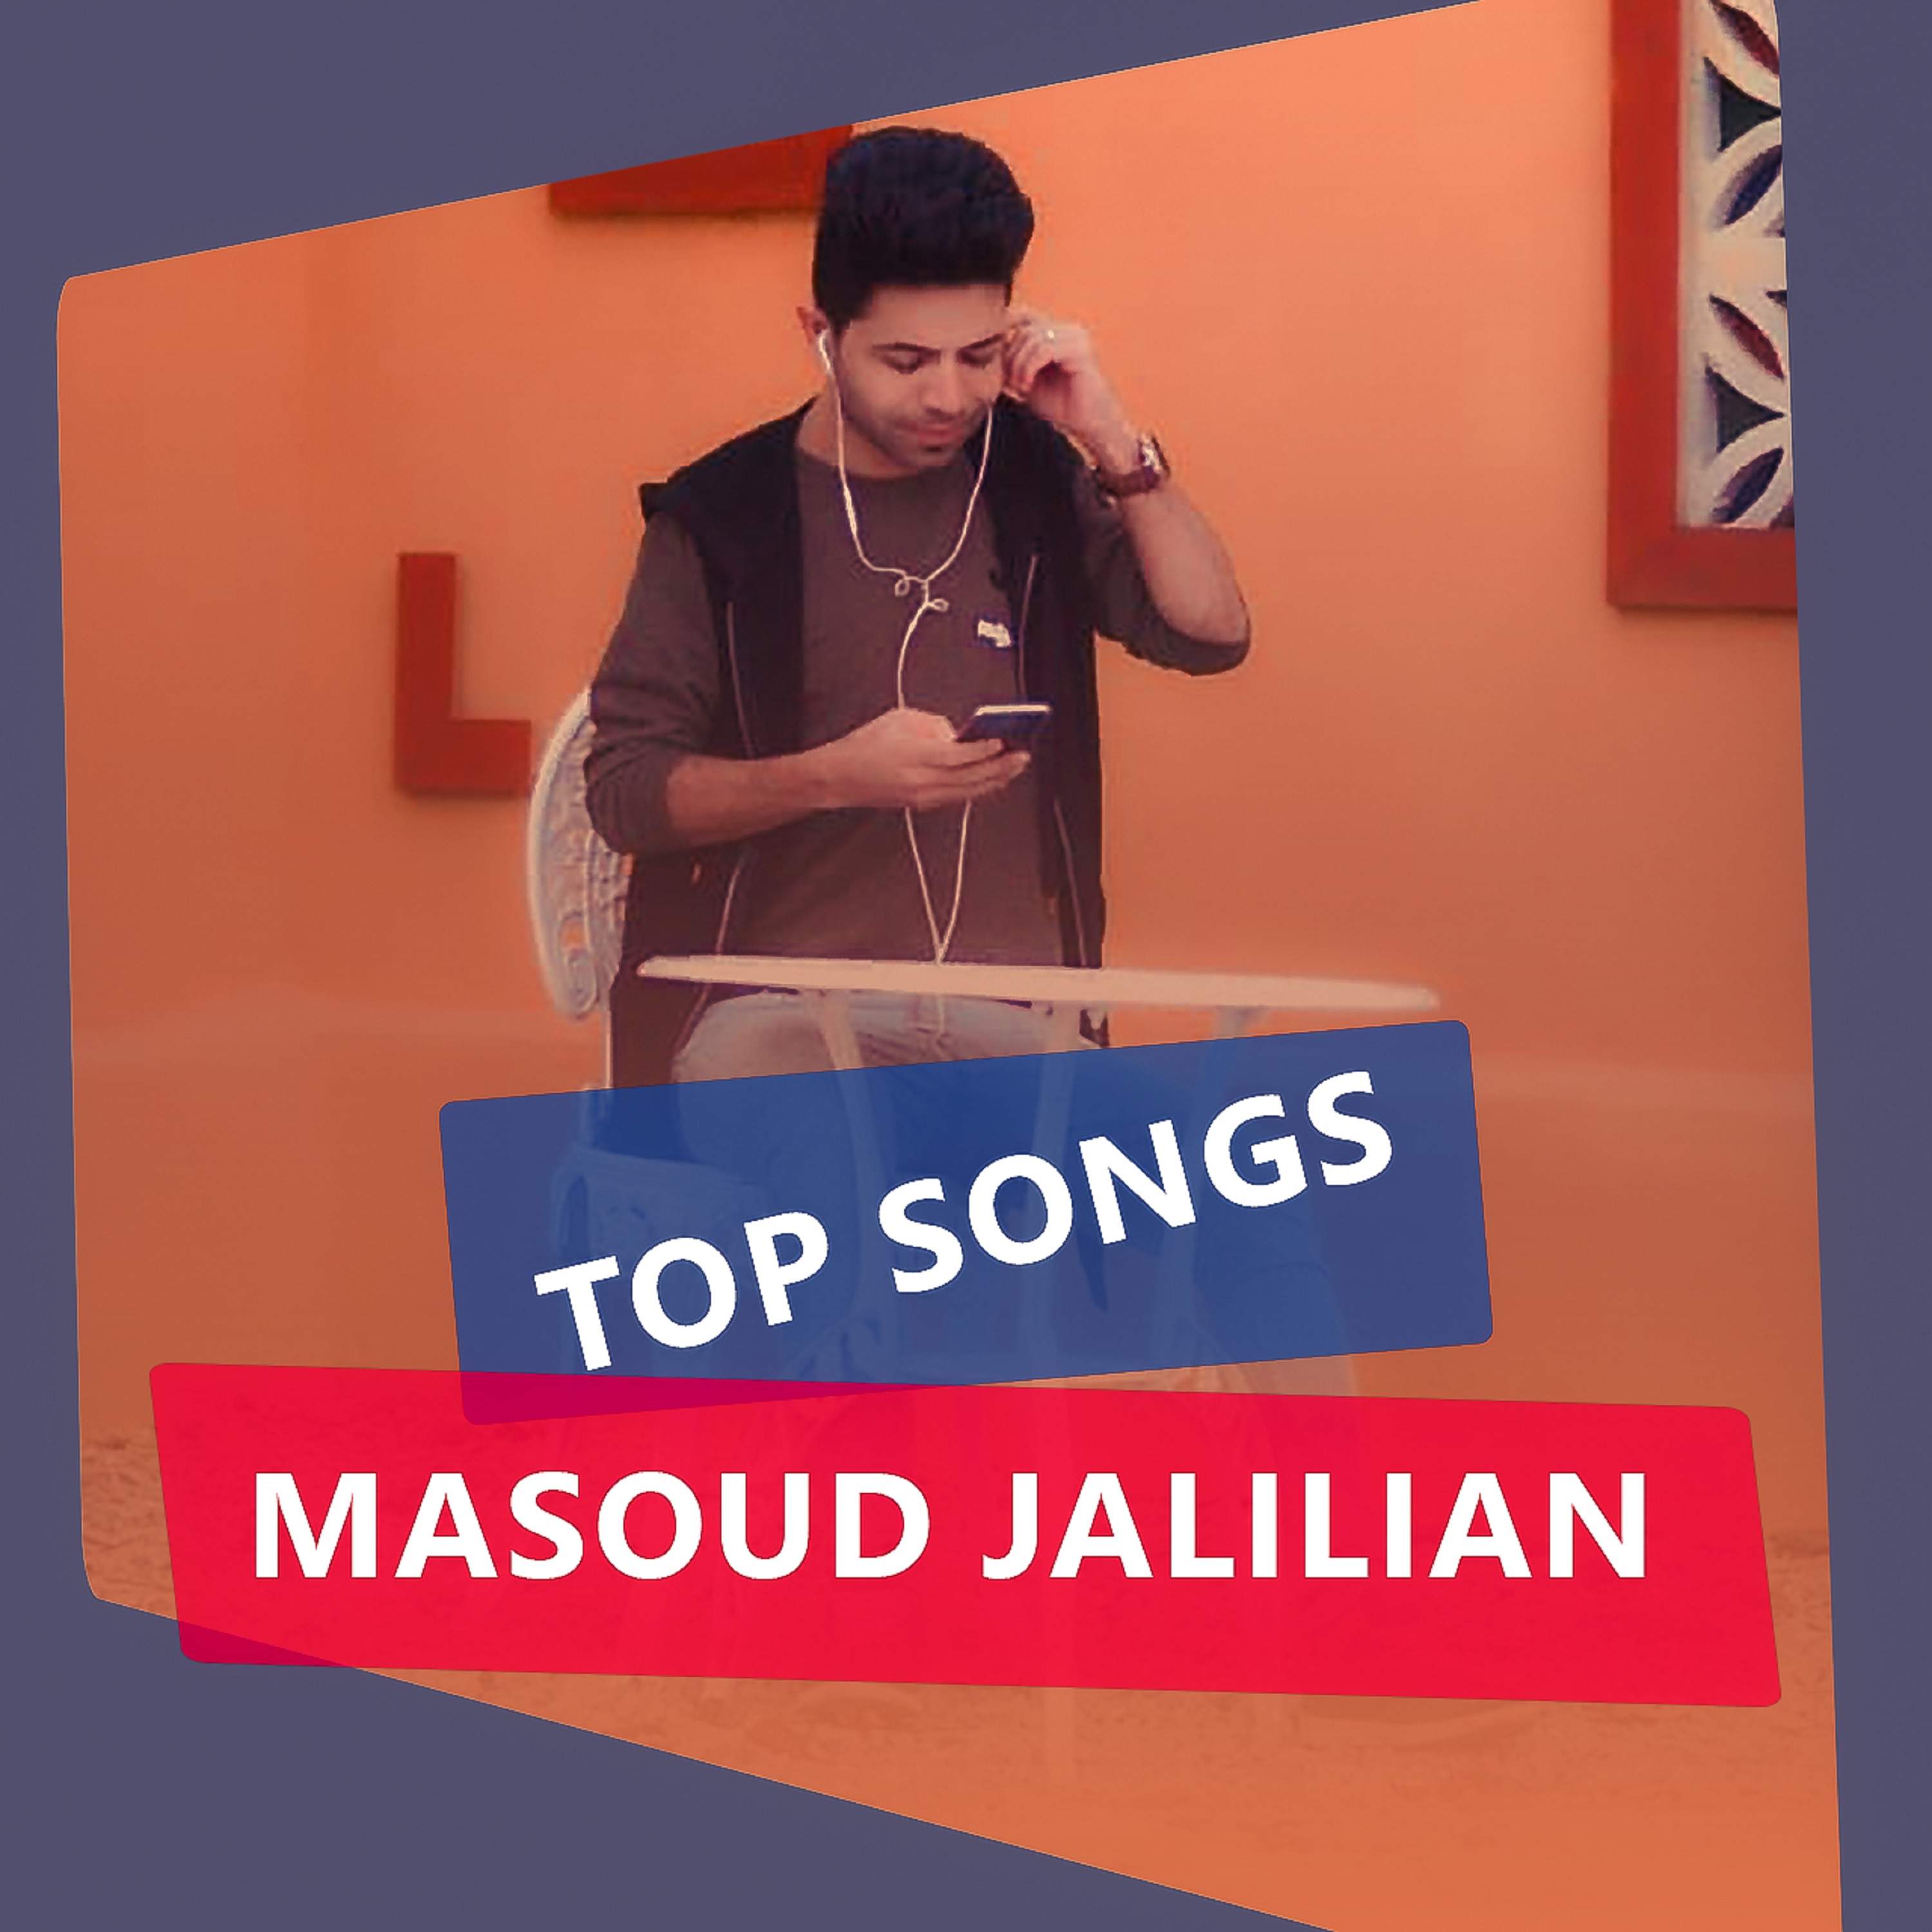  دانلود آهنگ جدید مسعود جلیلیان - چشم سیاه | Download New Music By Masoud Jalilian - Dagh Doori